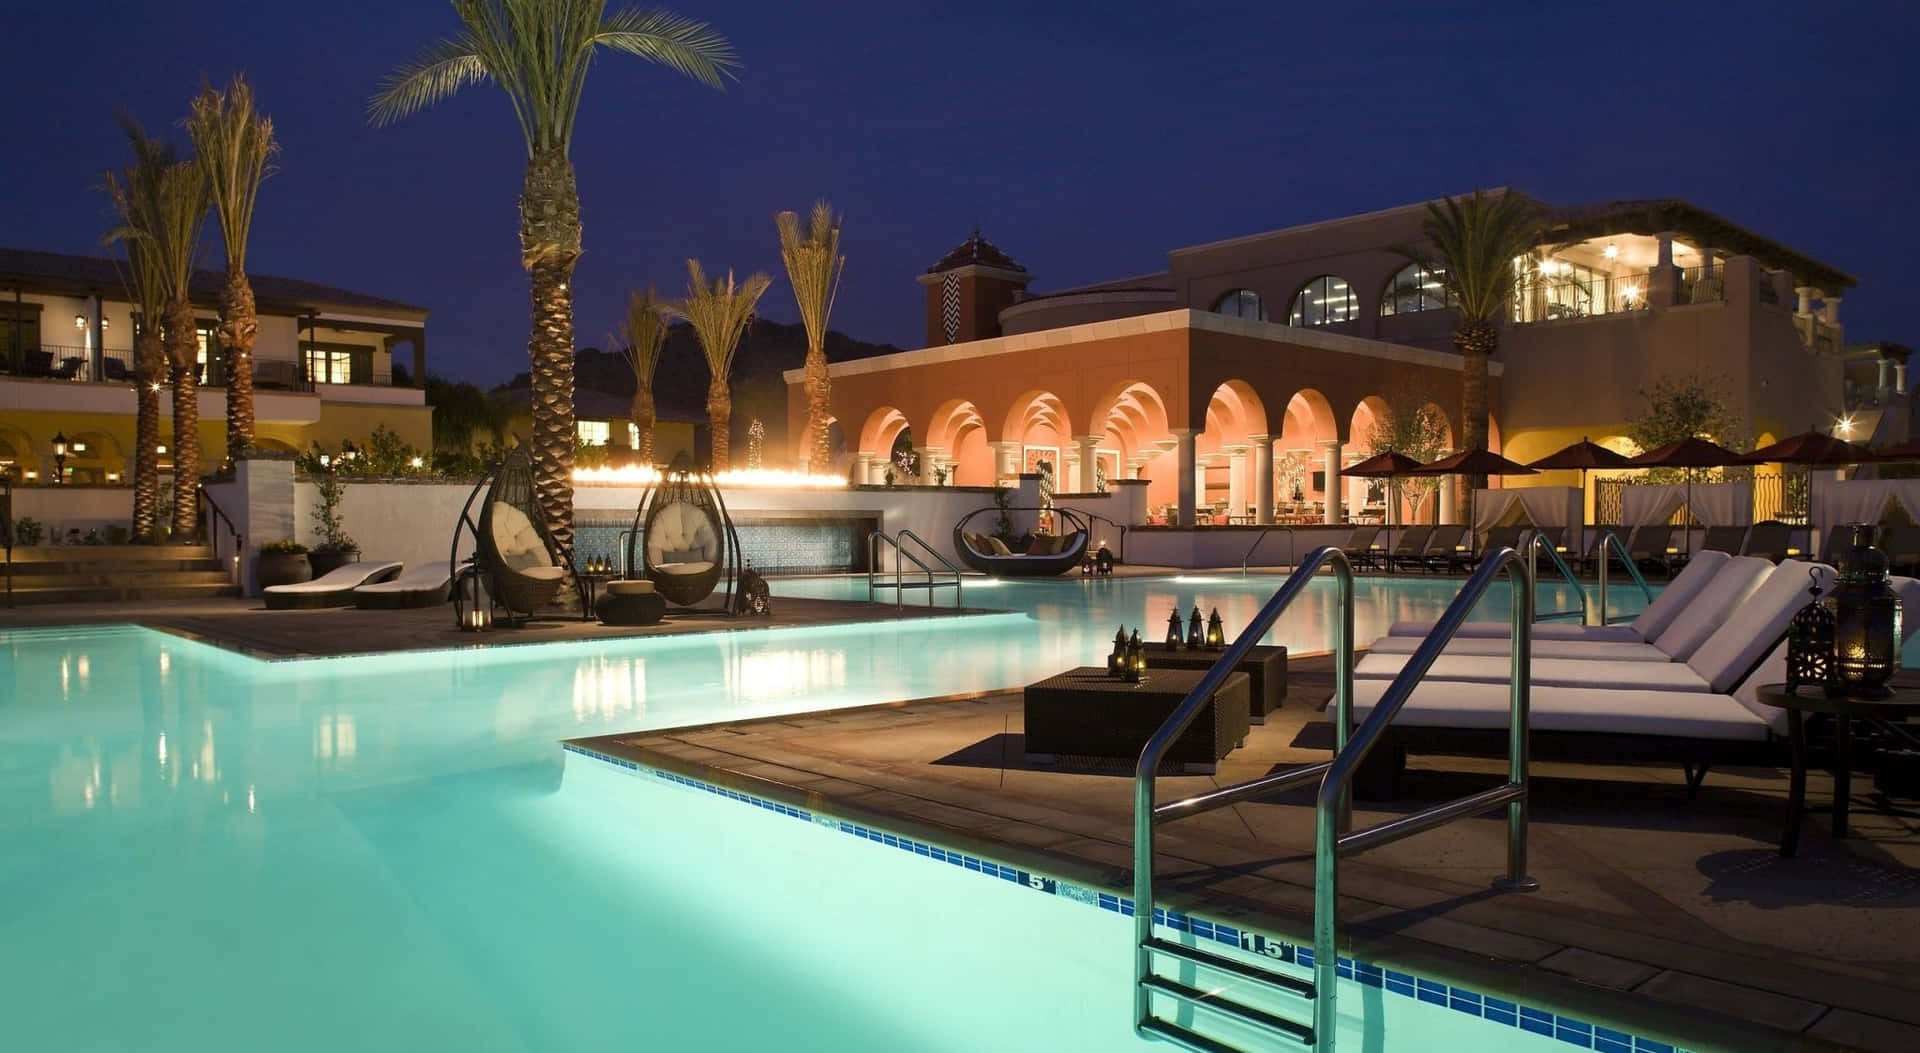 Luxury Resort Poolside Nighttime View.jpg Wallpaper